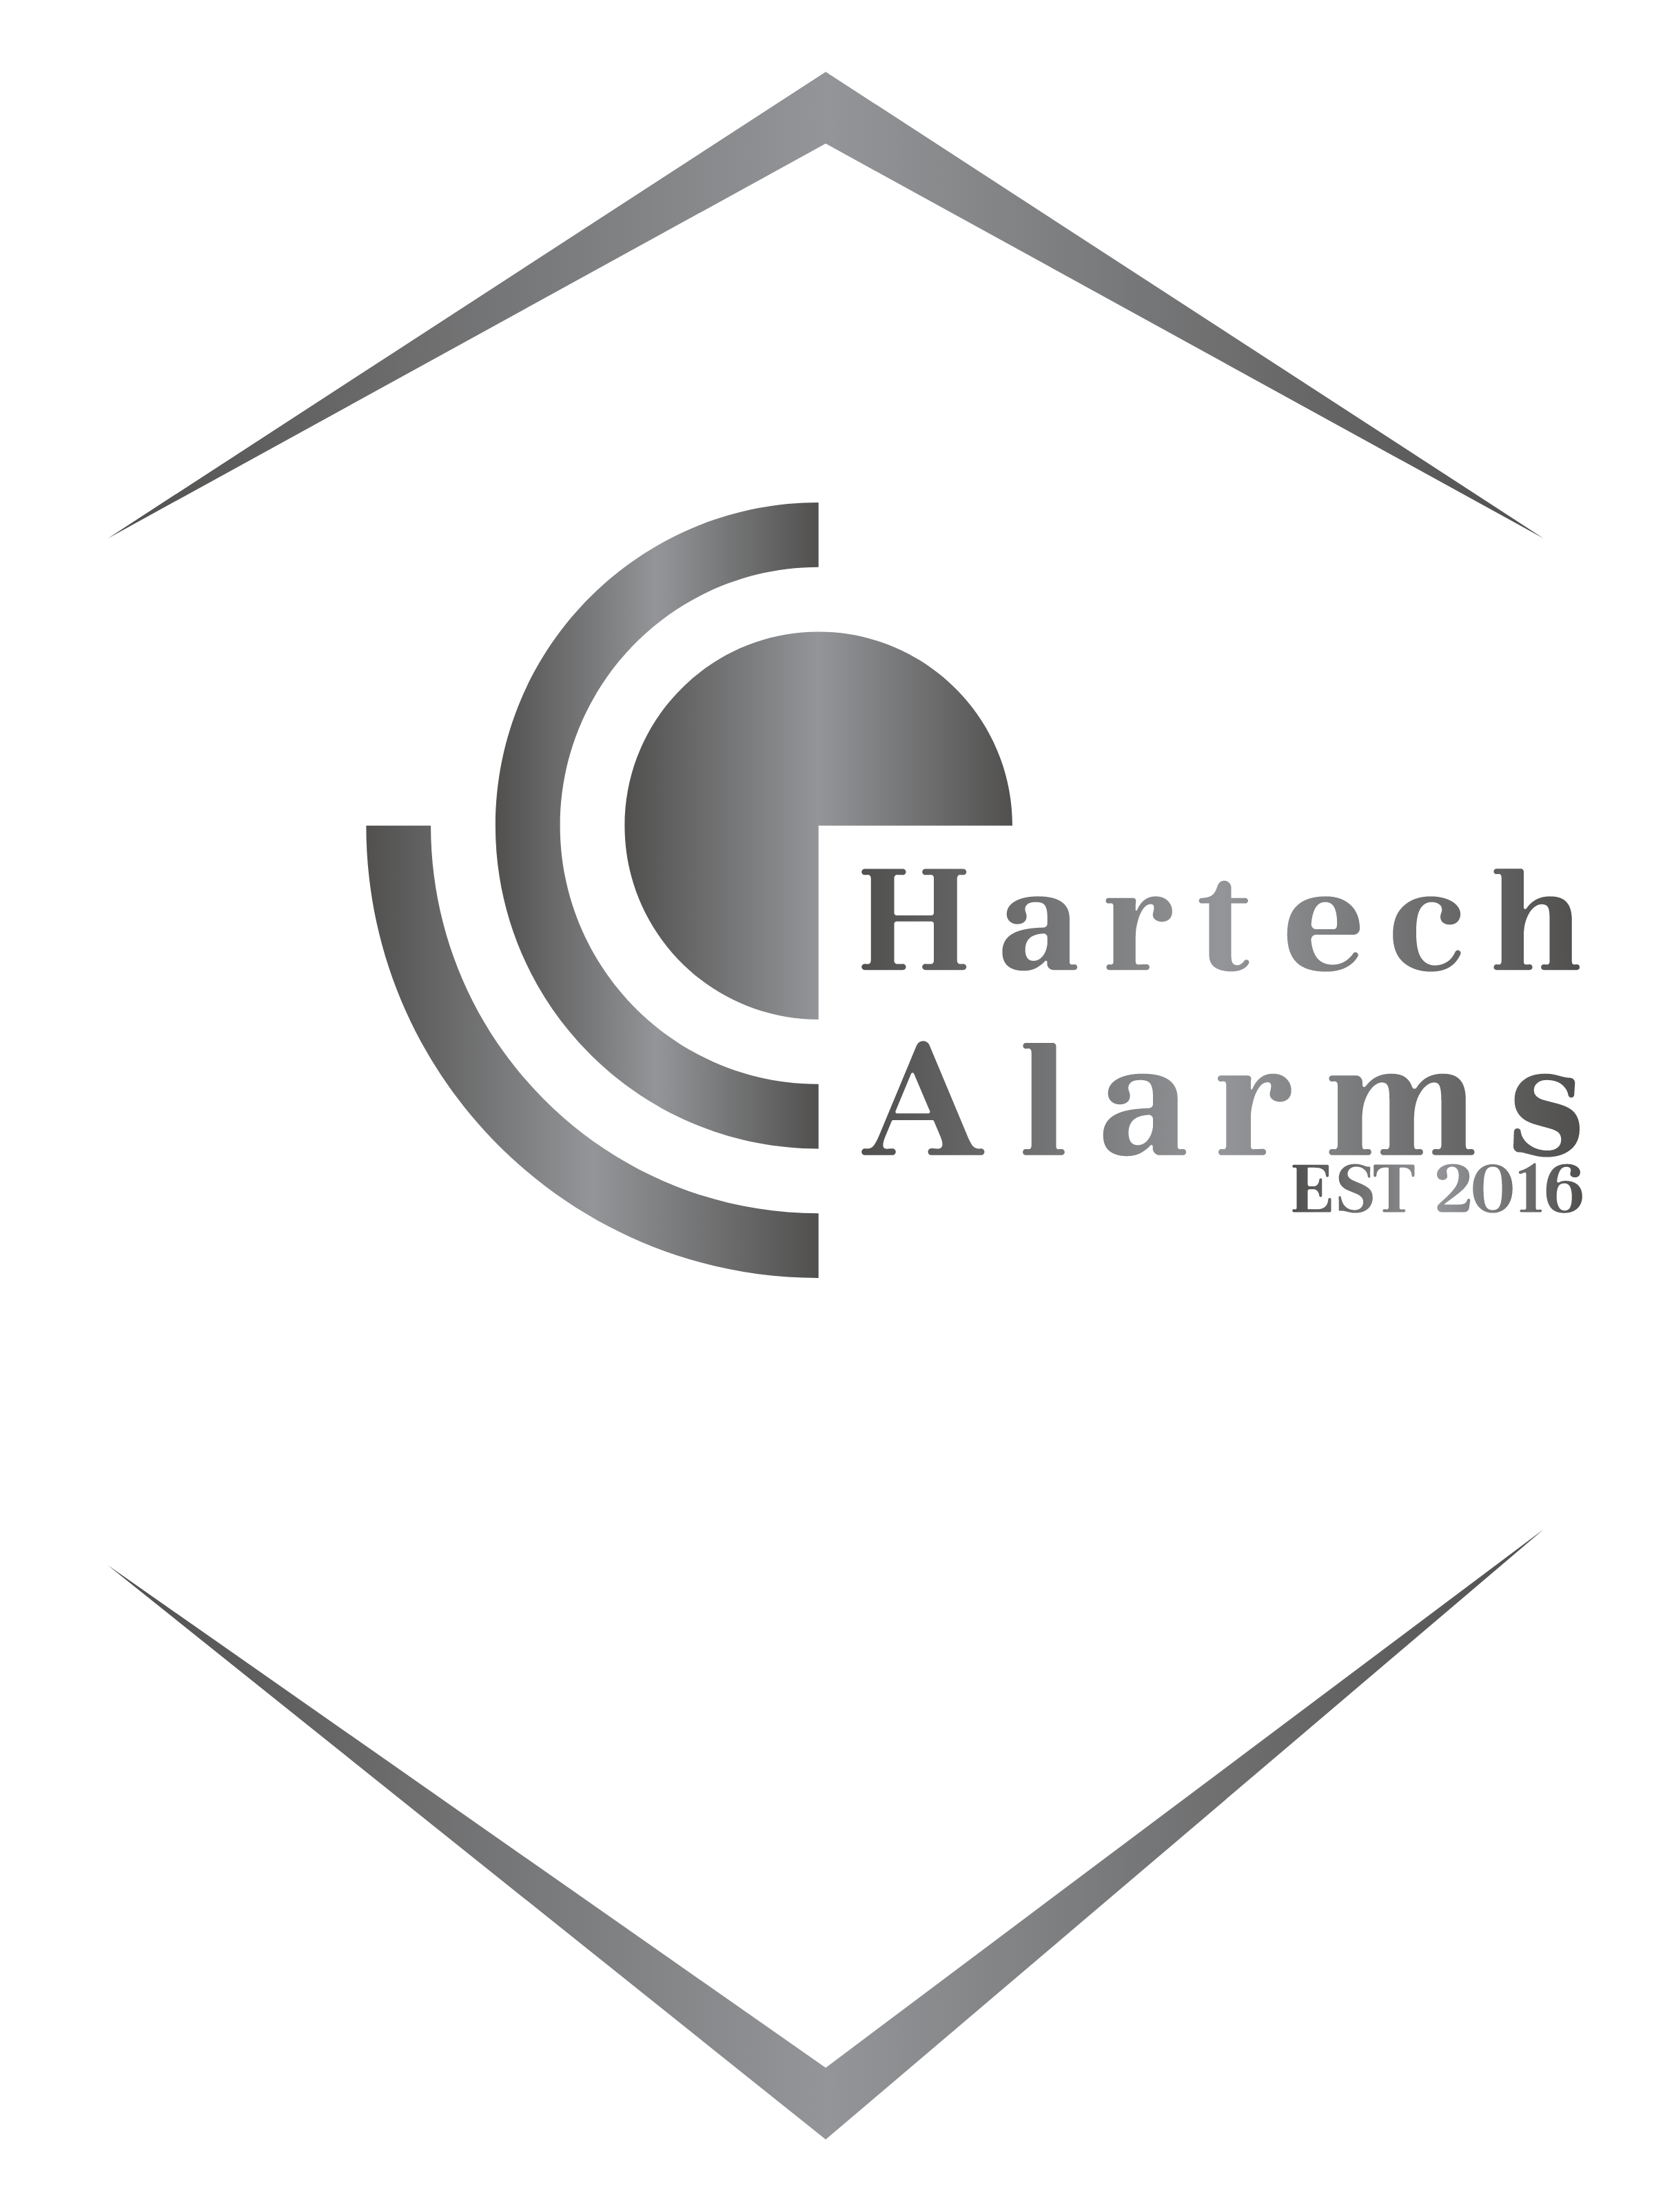 Hartech Alarms